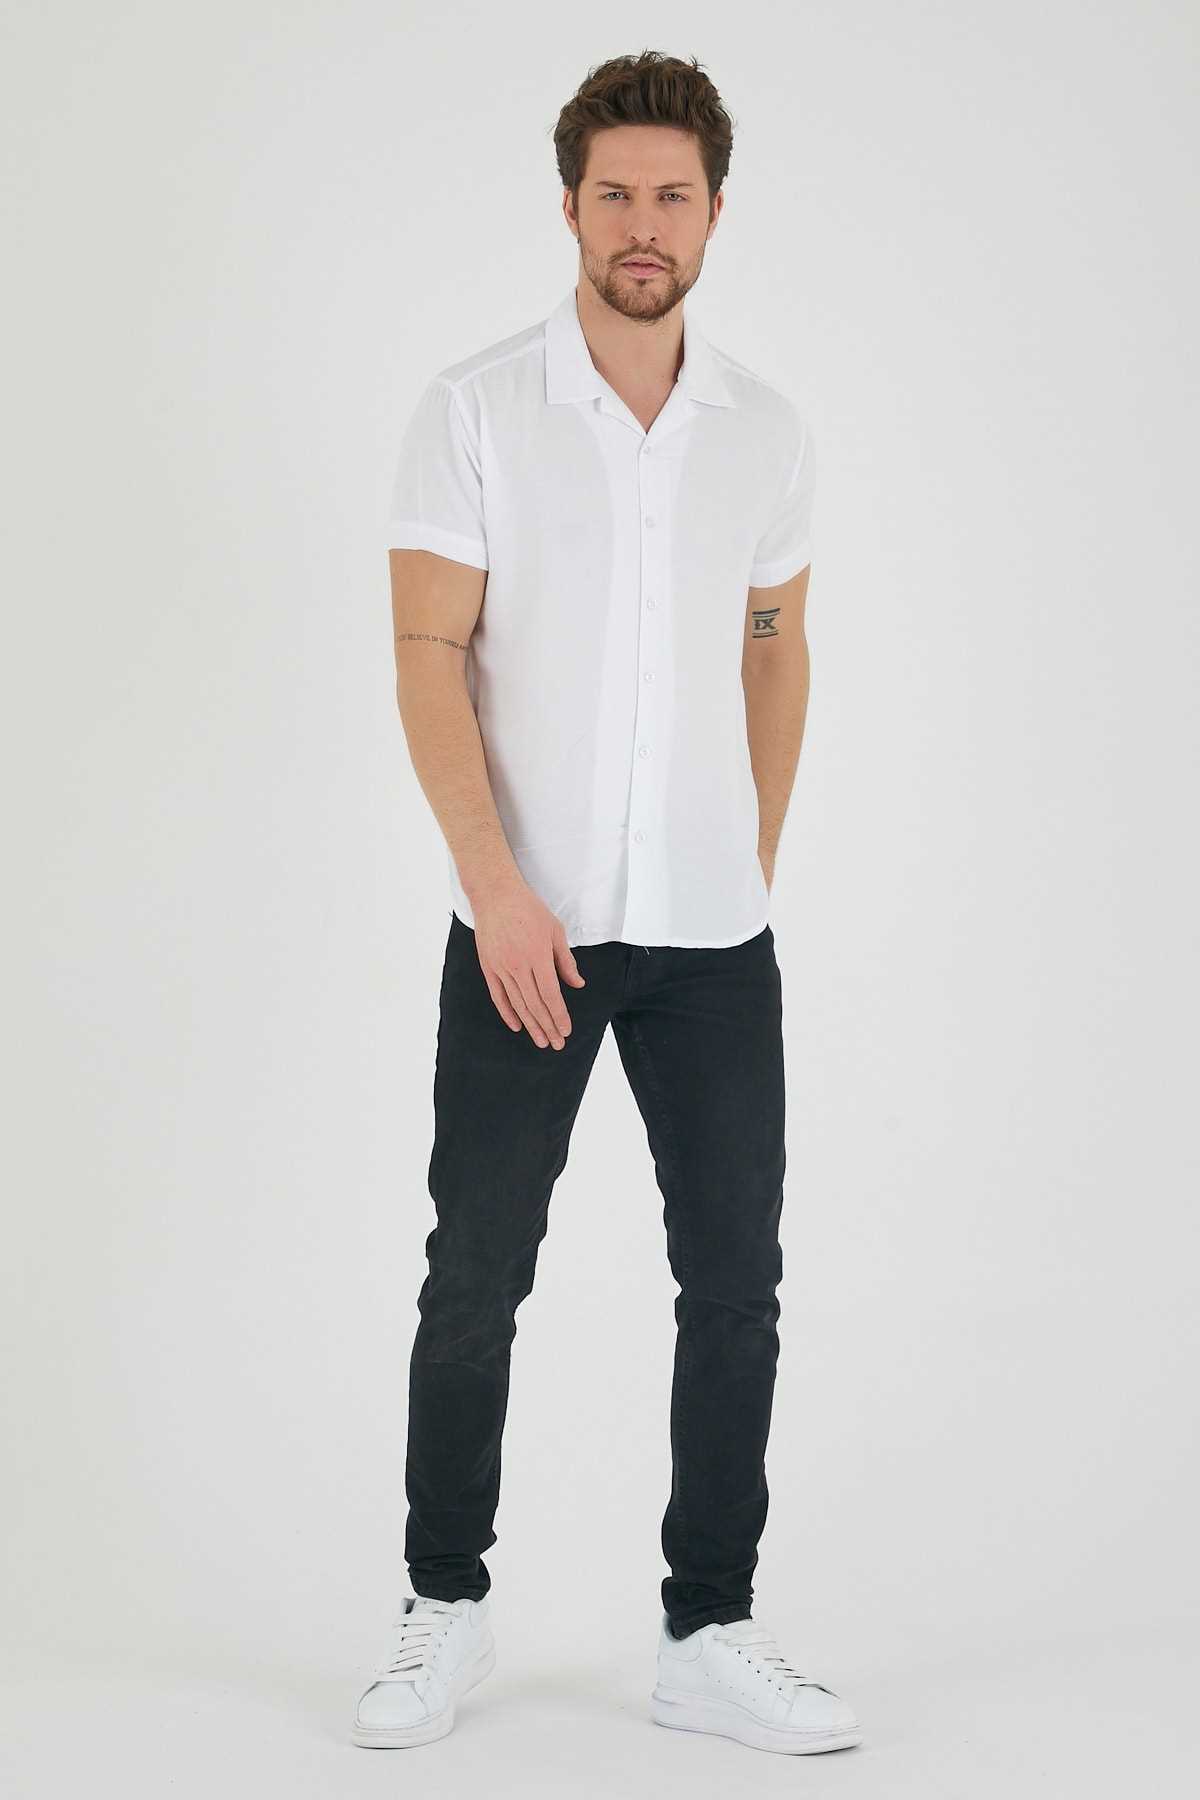 خرید پیراهن مردانه از ترکیه برند Mero Life رنگ سفید ty246419205